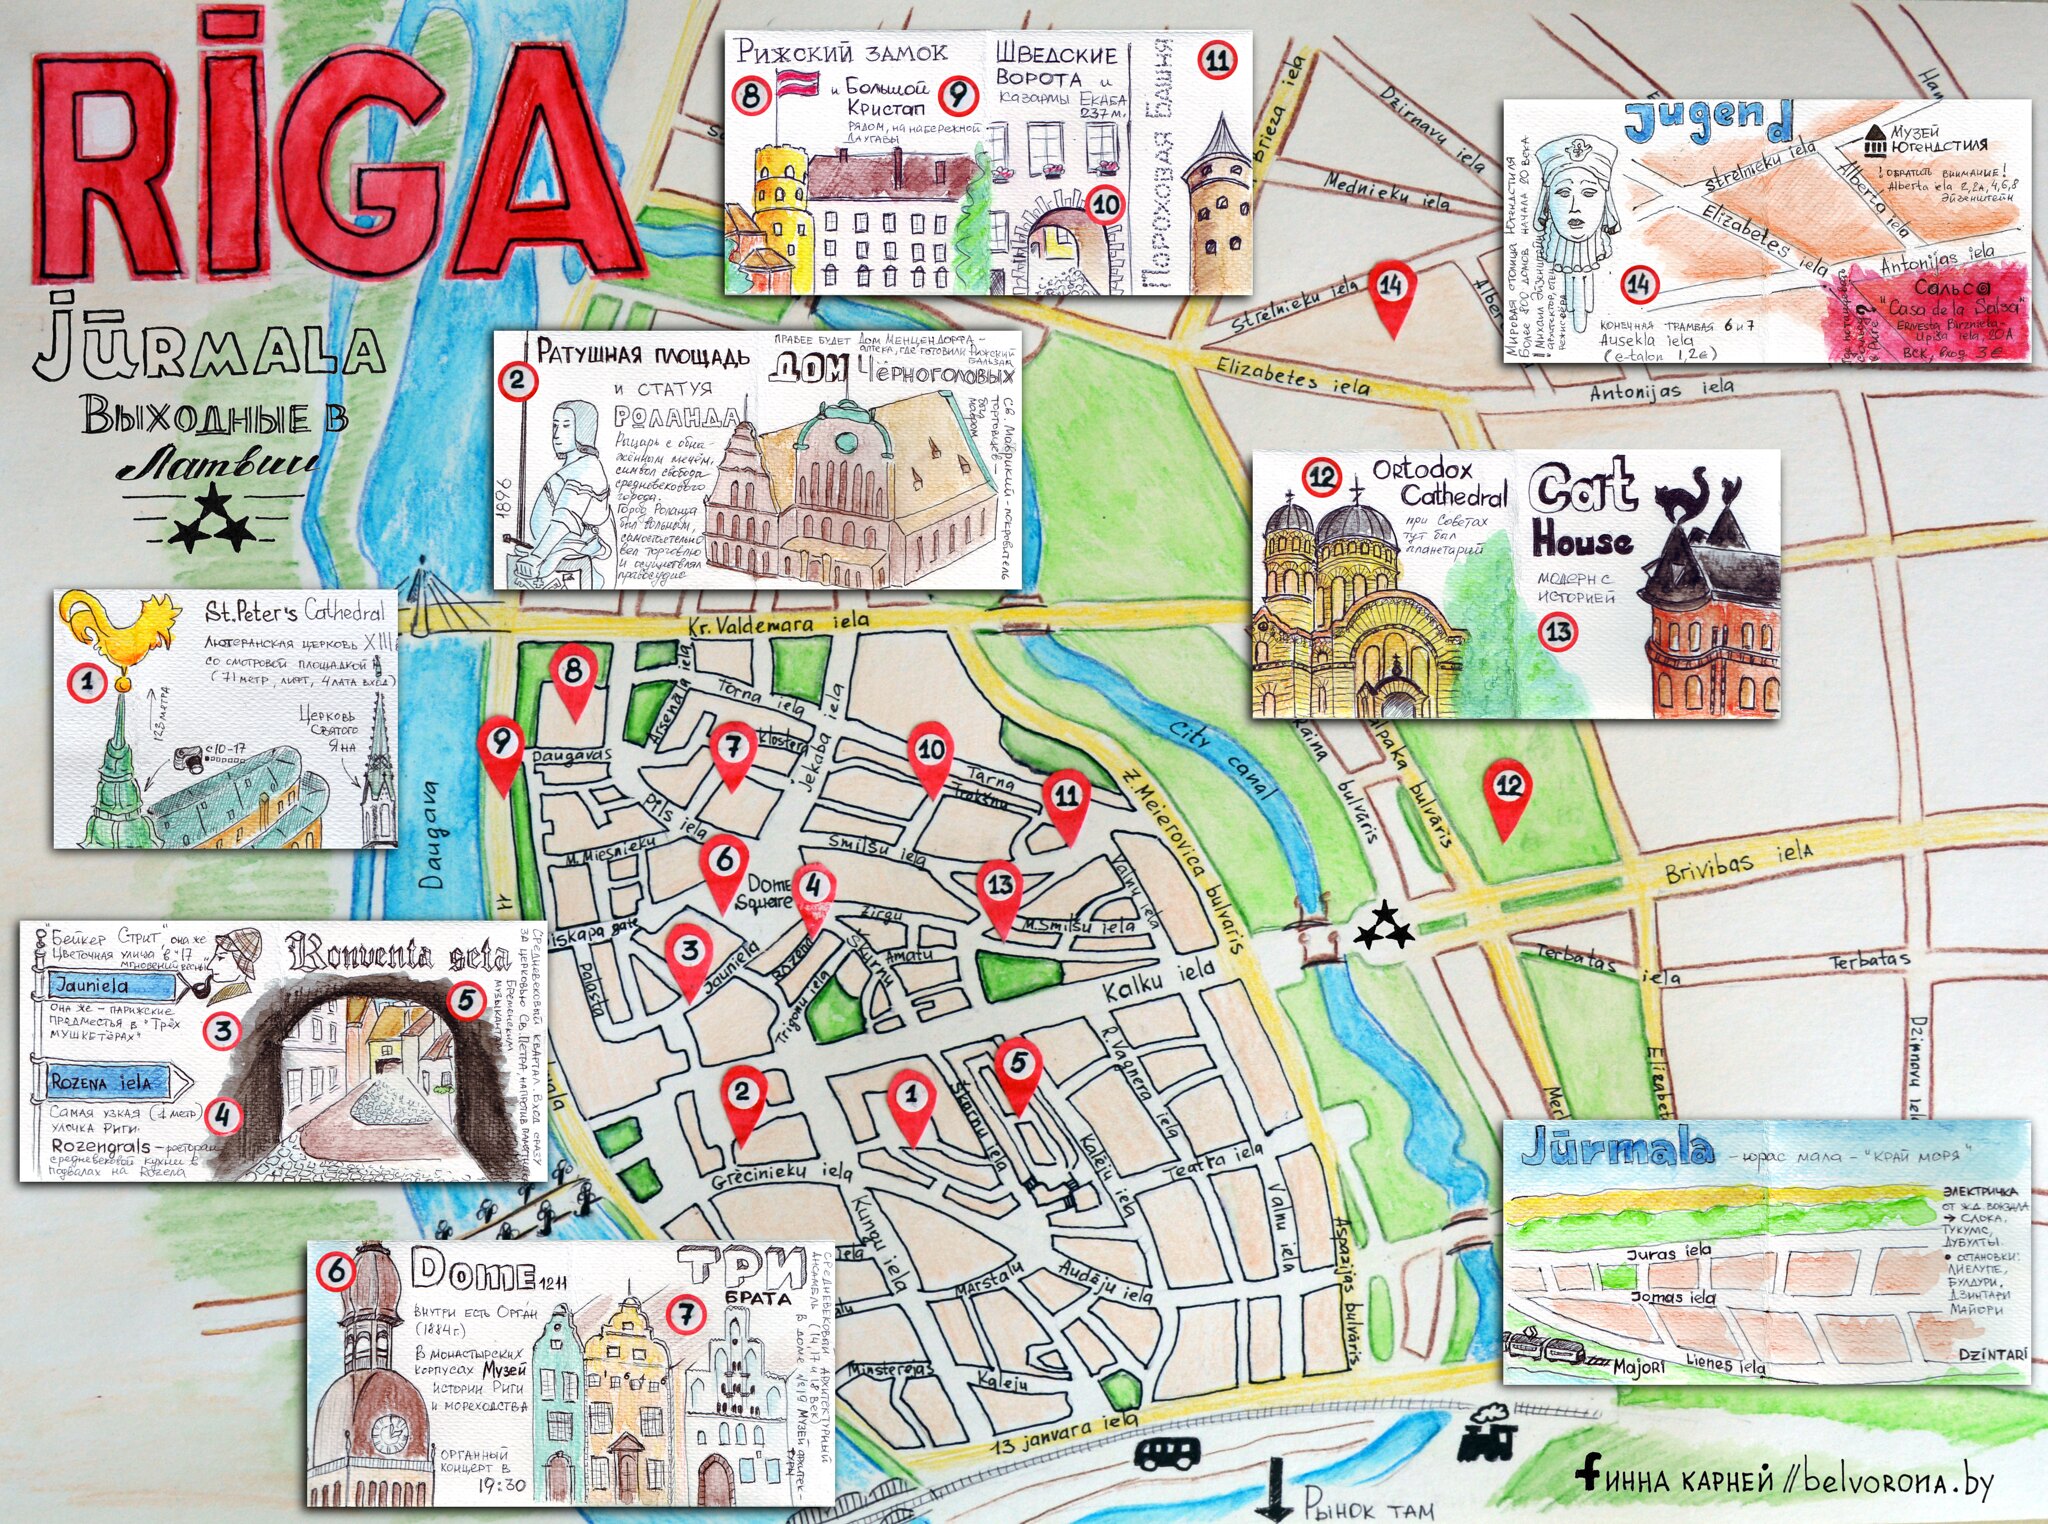 Рисованная карта Риги для пеших прогулок